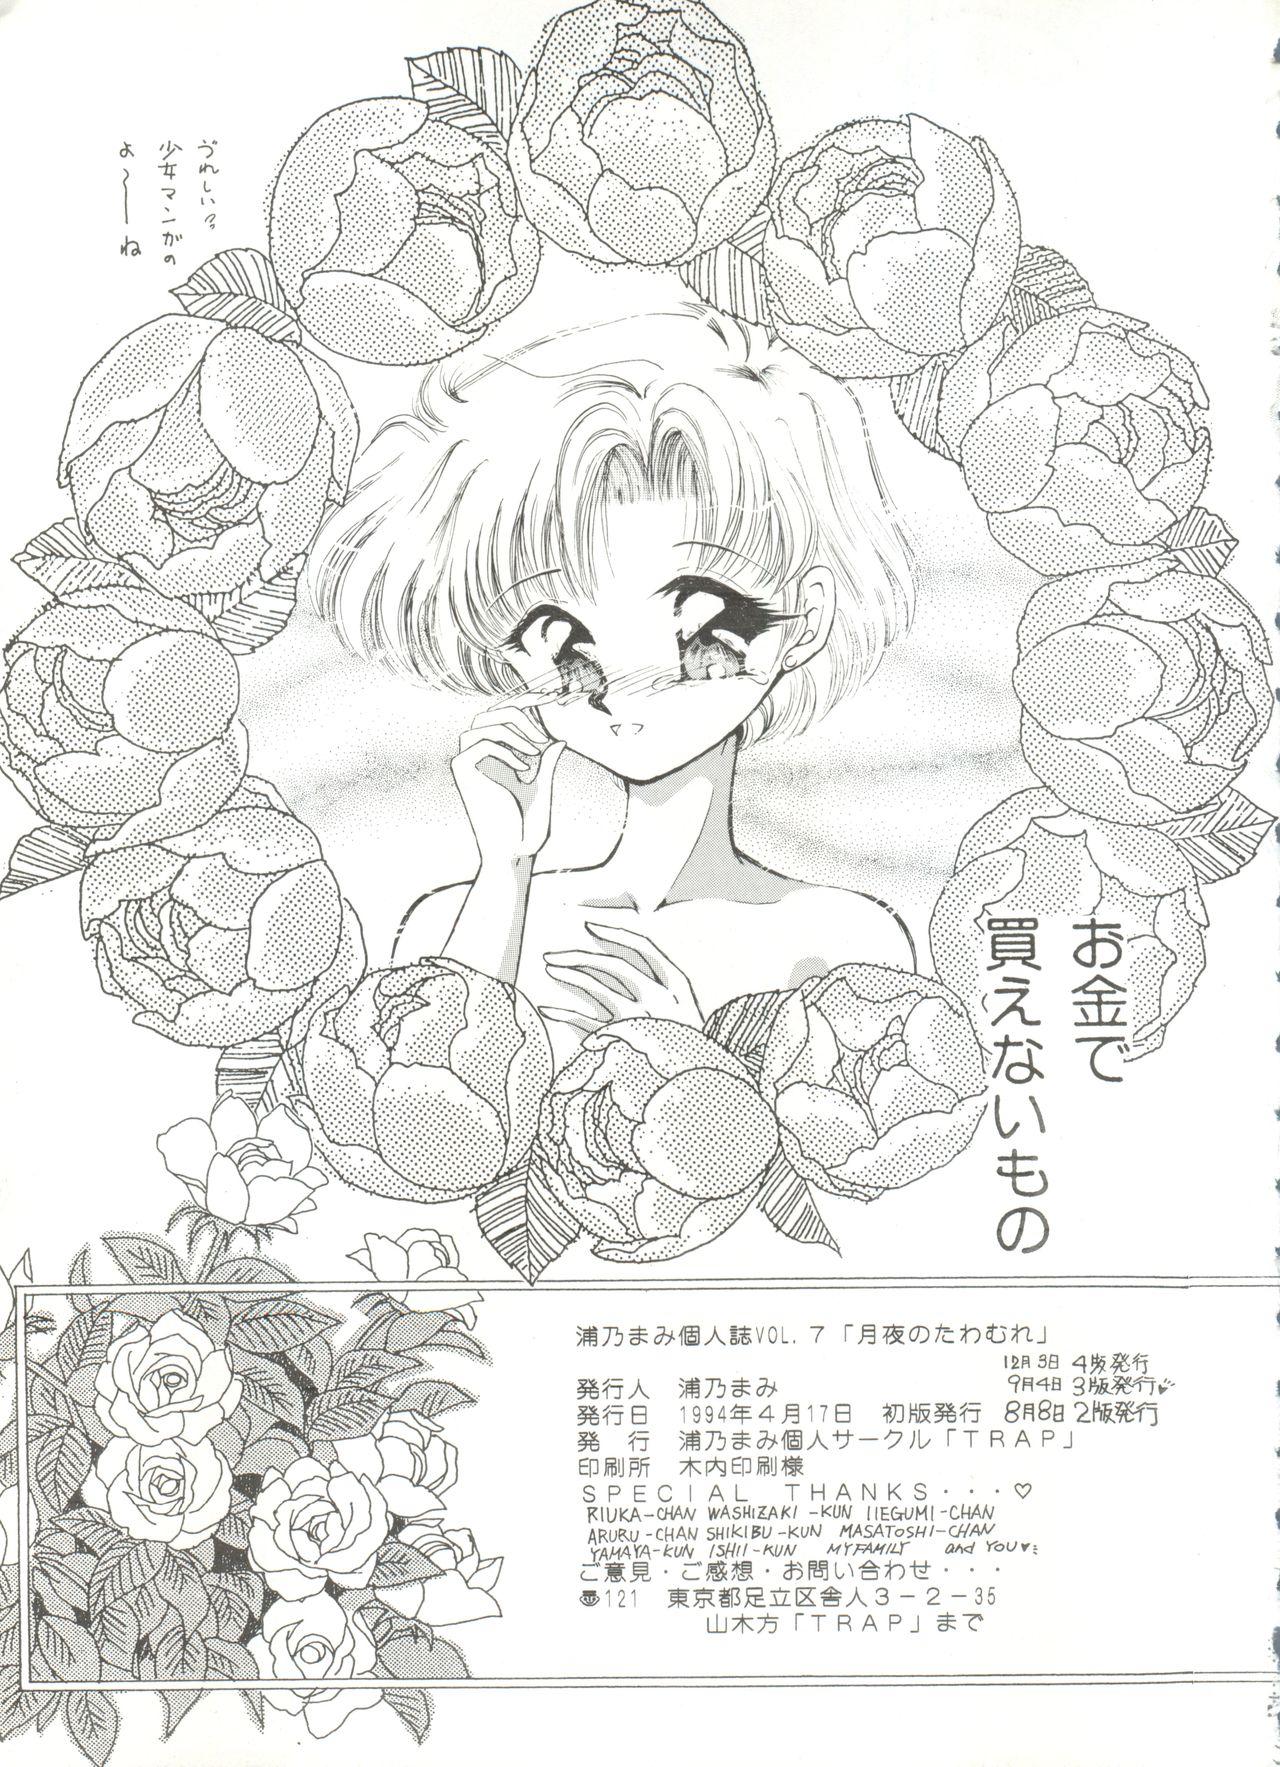 Jeune Mec Tsukiyo no Tawamure 6 - Sailor moon Hispanic - Page 53